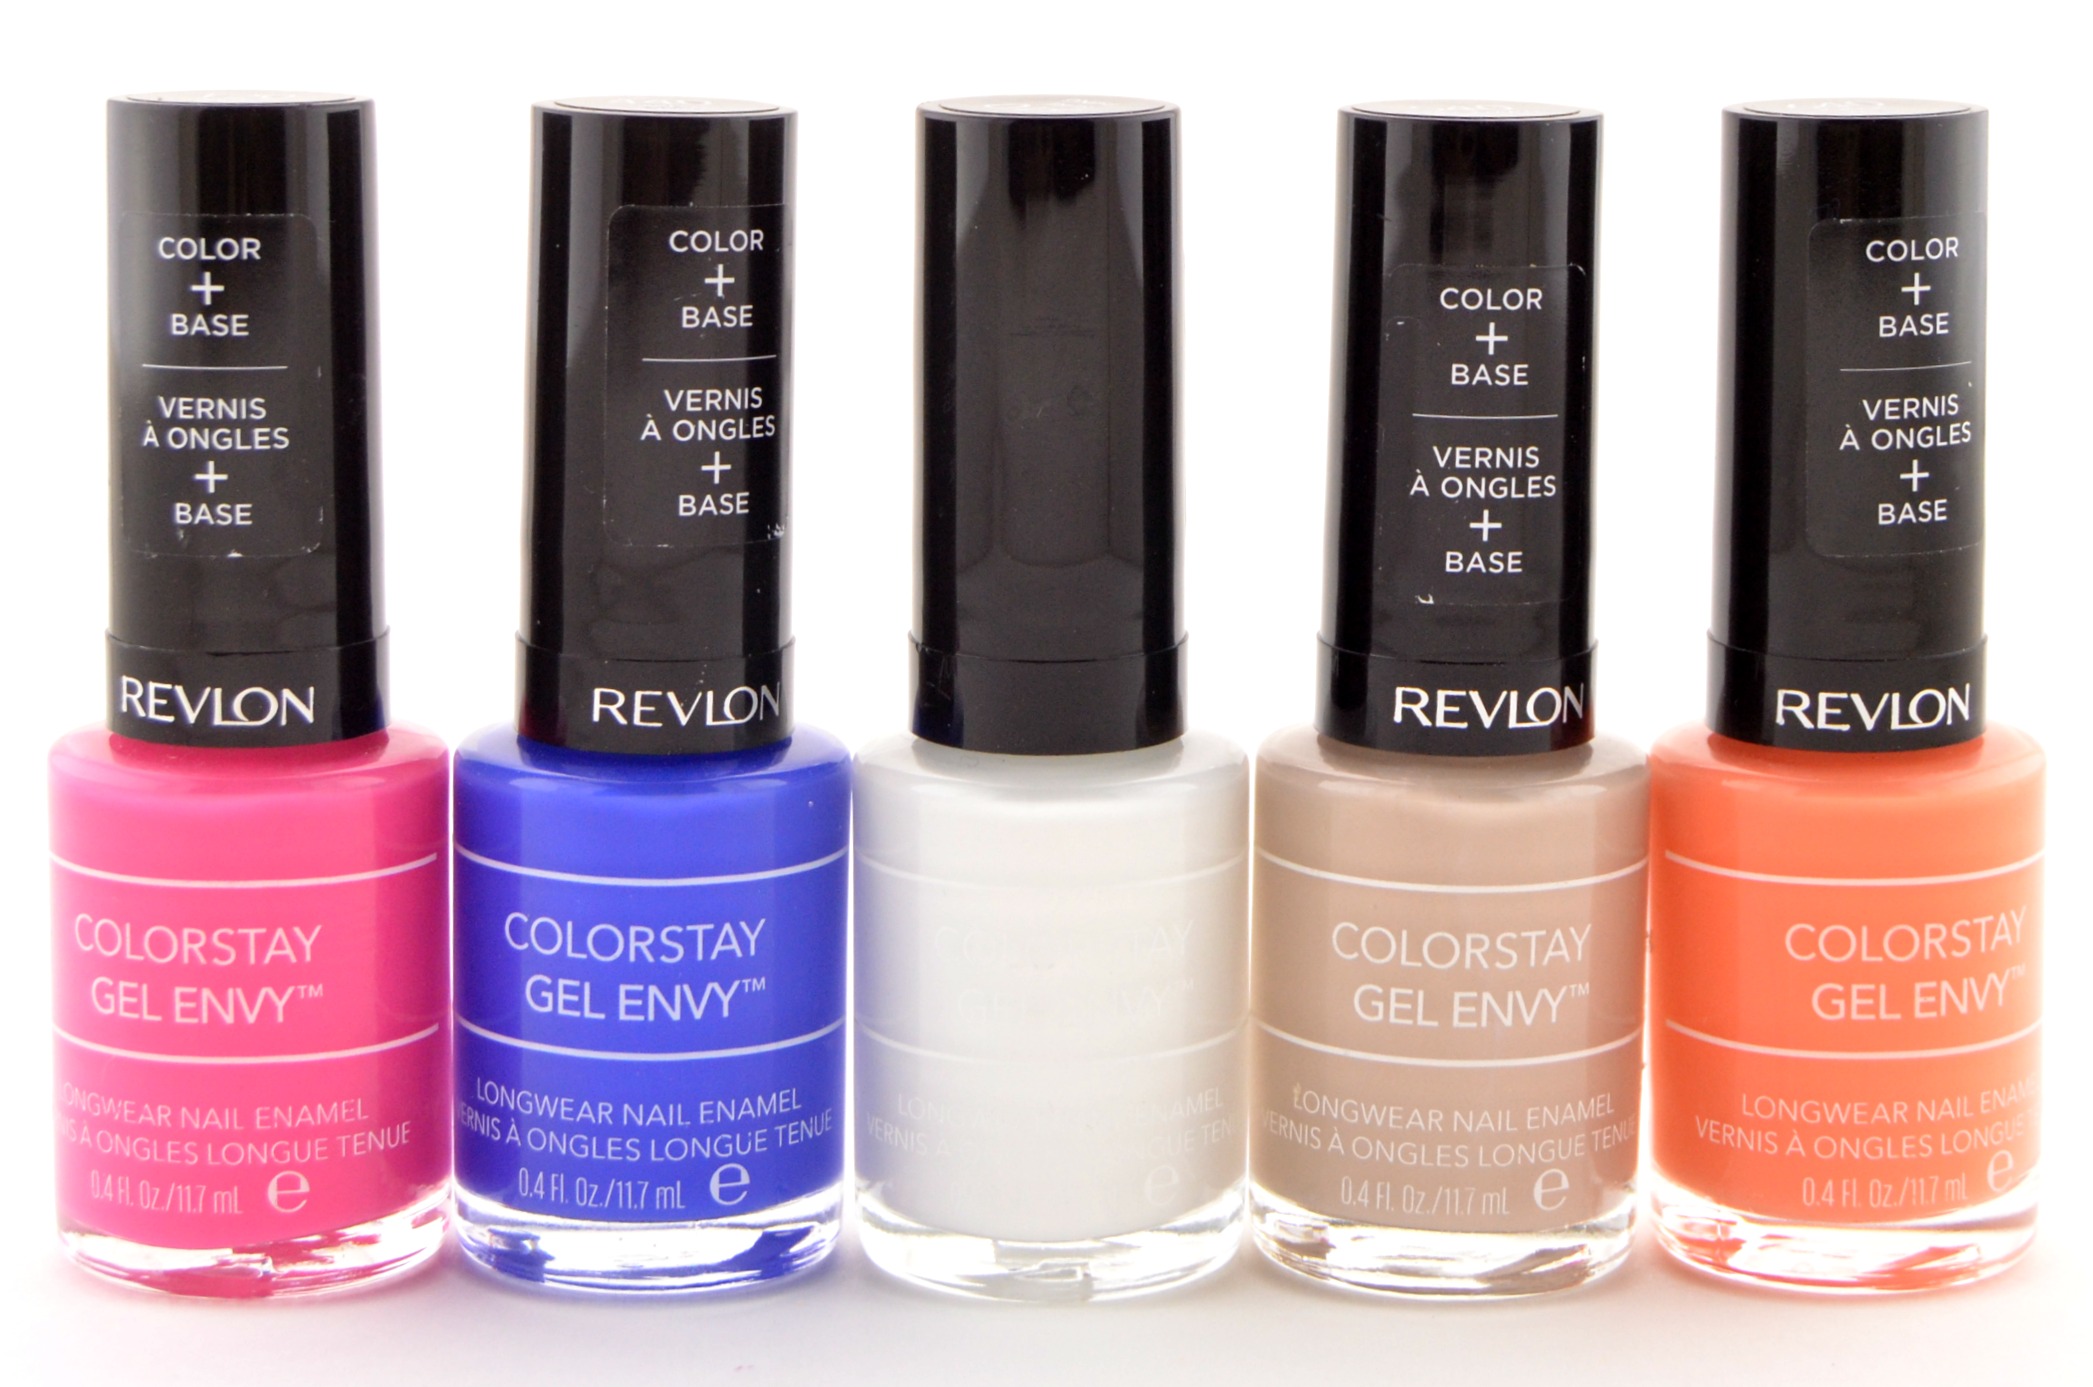 Revlon ColorStay Gel Envy Longwear Nail Enamel in Mauve Matters - wide 2